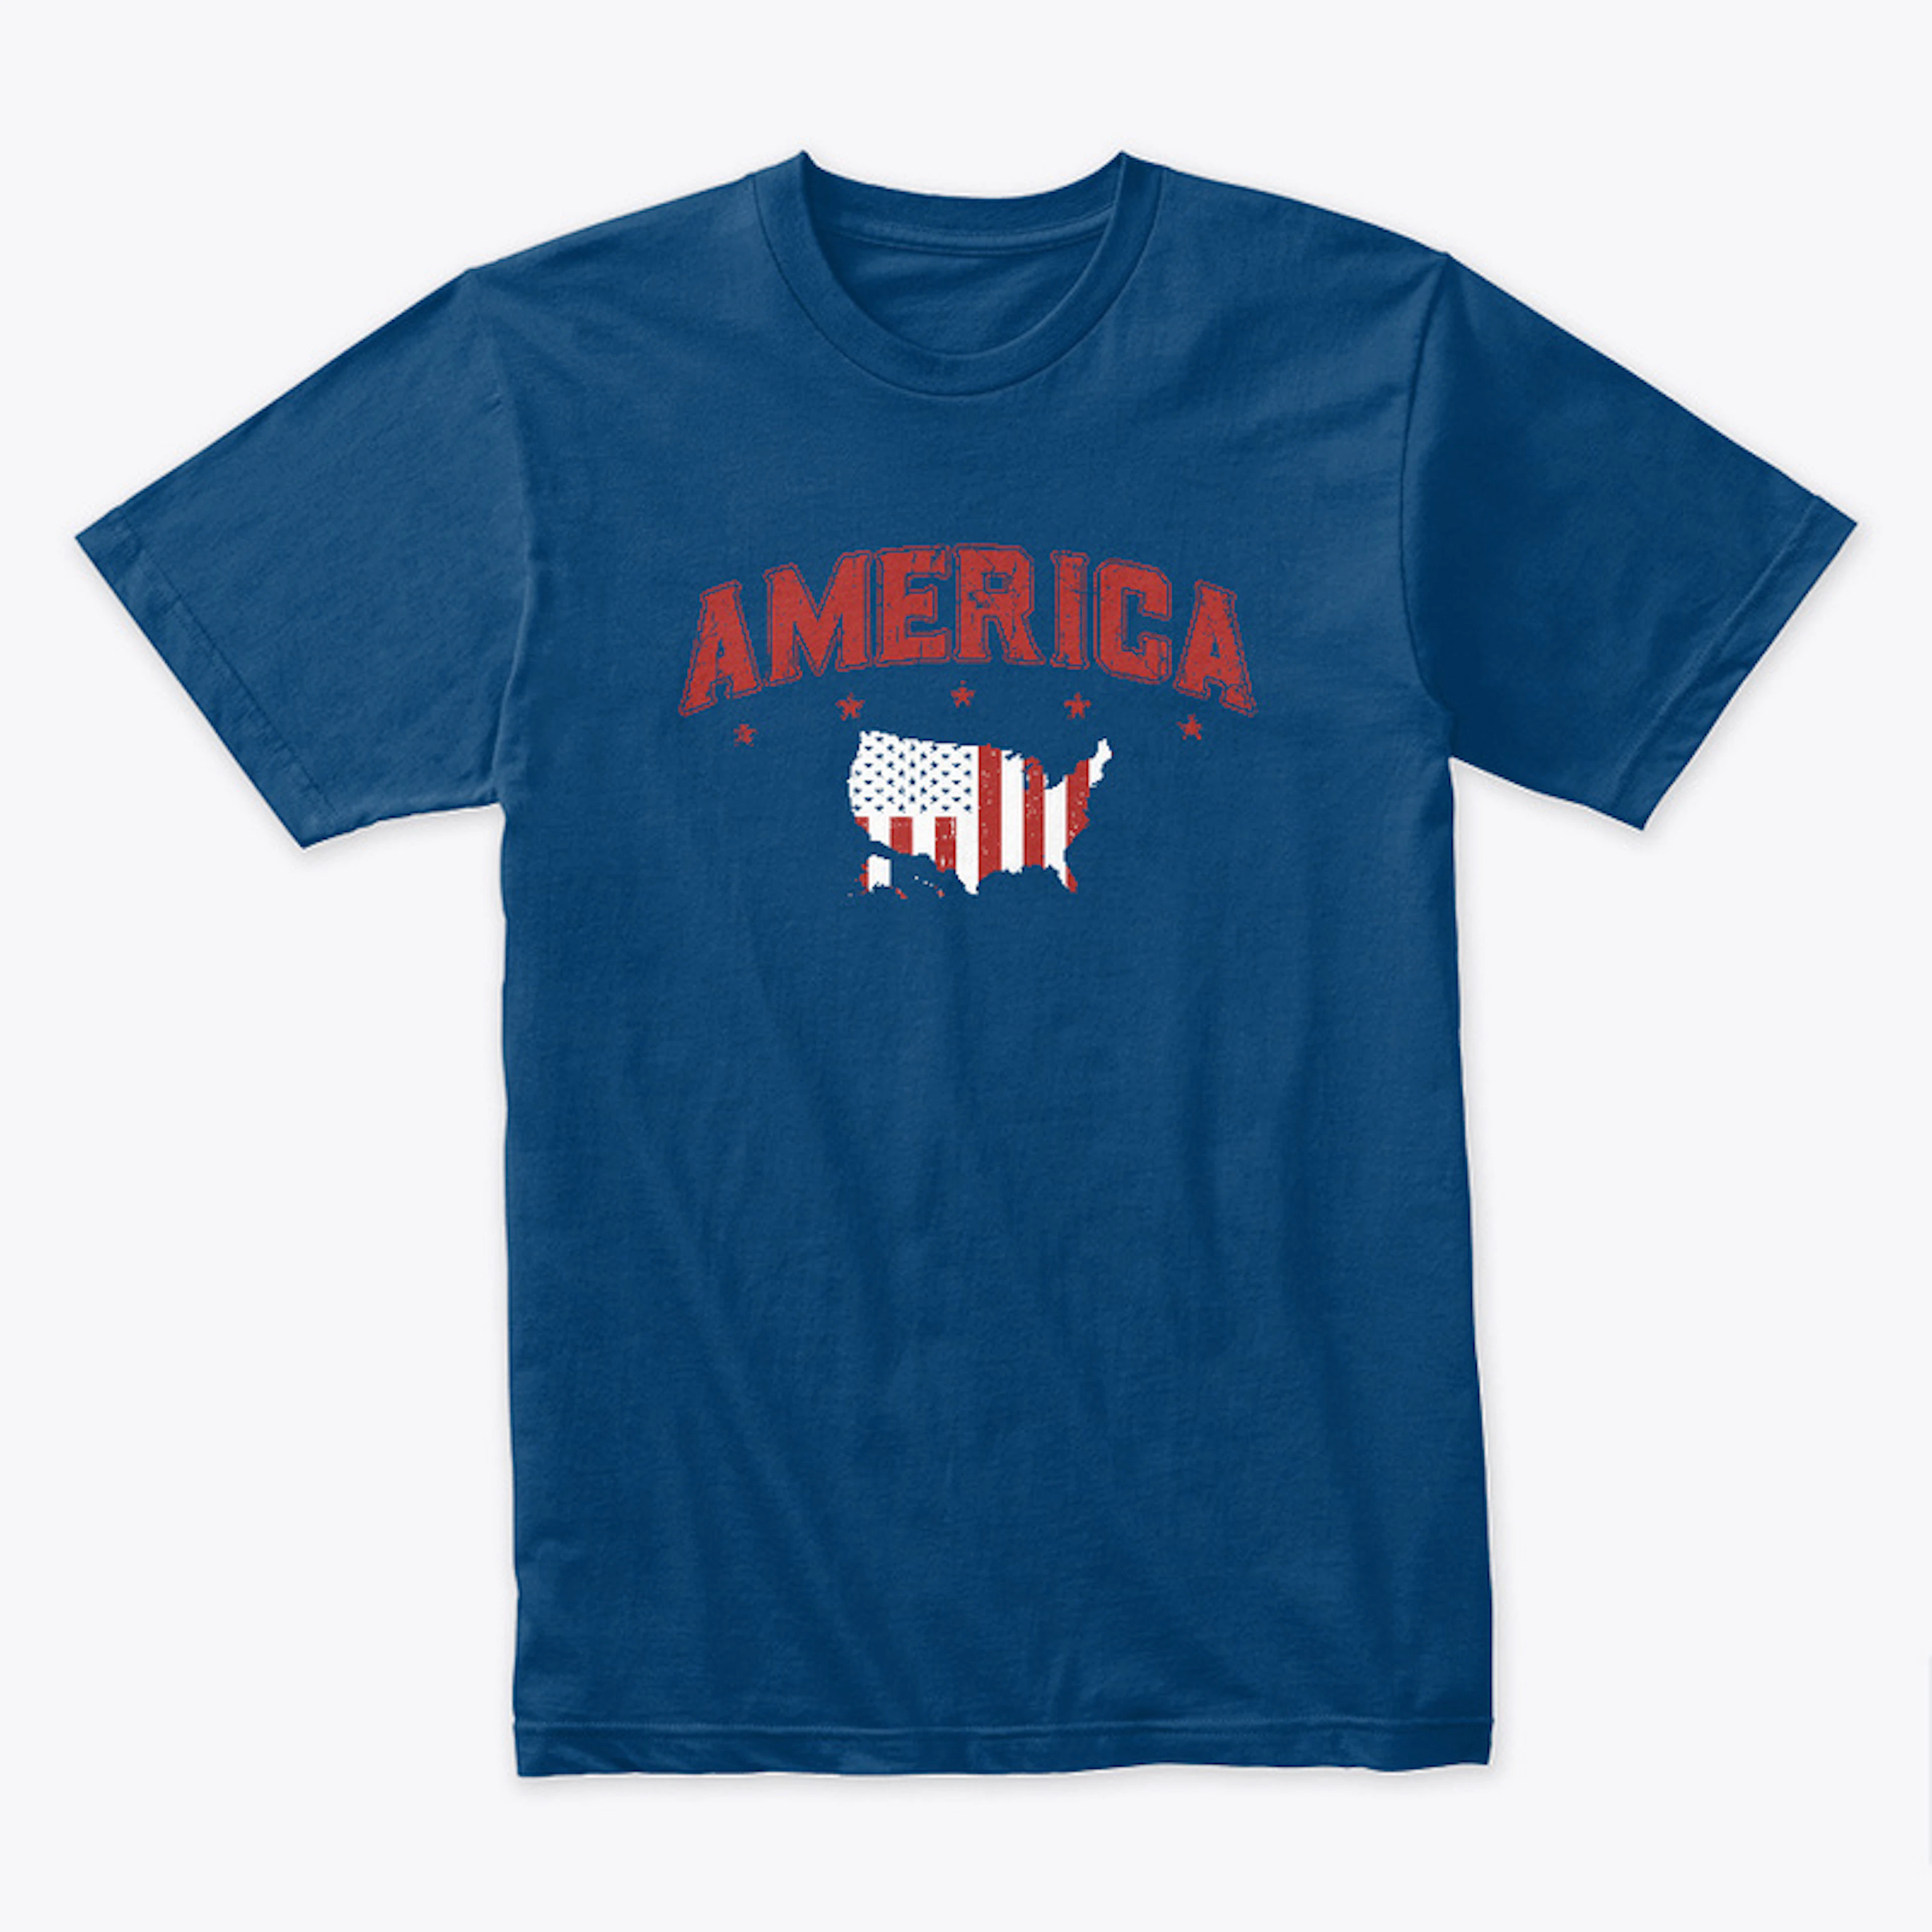 America Peacetime Premium T-Shirt